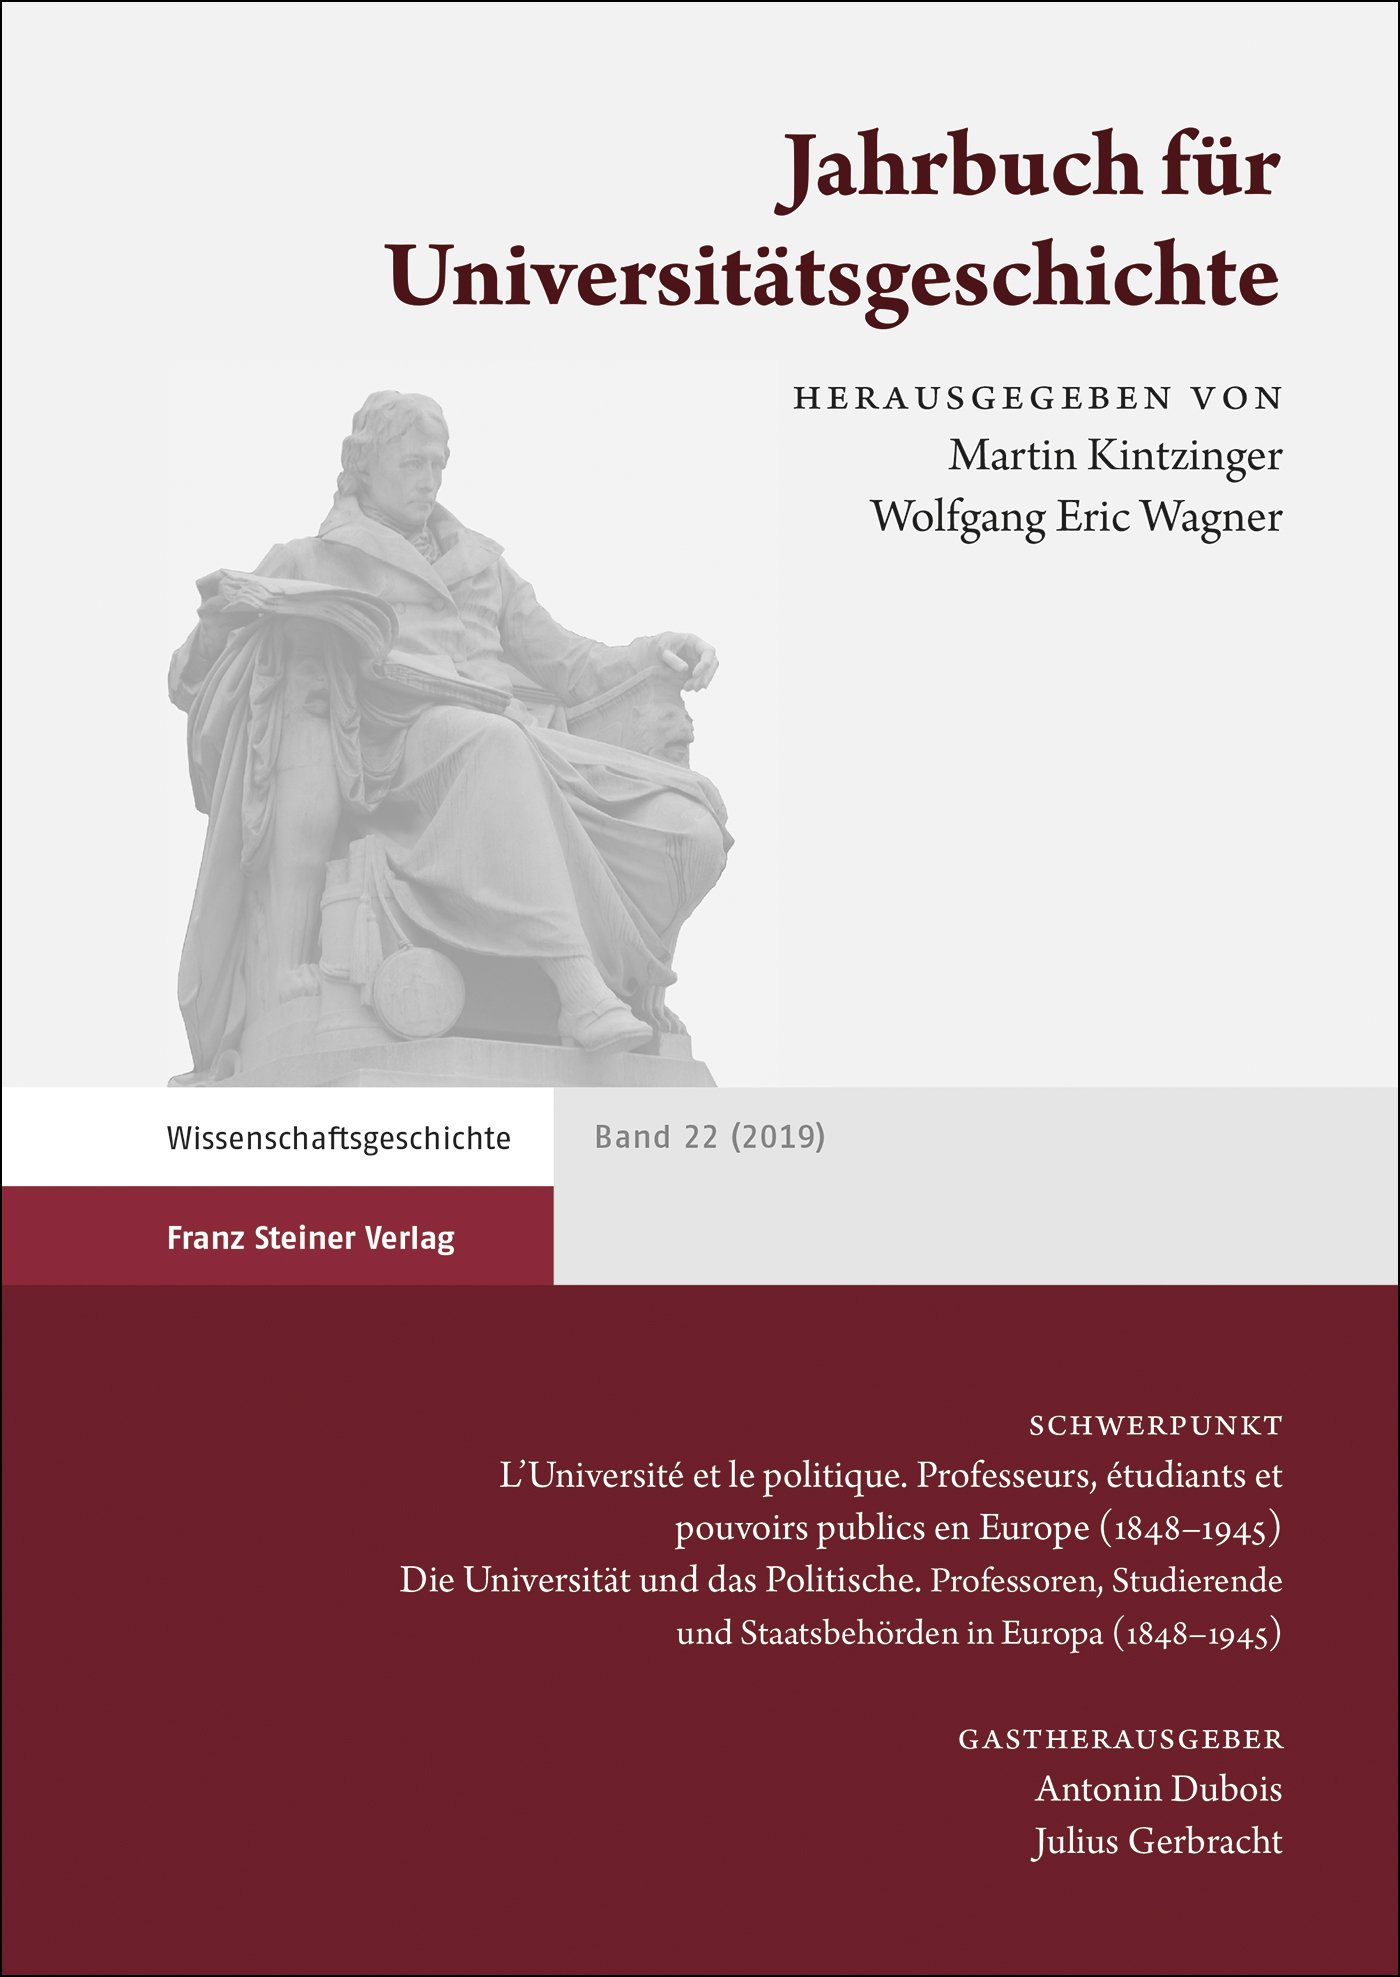 Jahrbuch für Universitätsgeschichte 22 (2019)